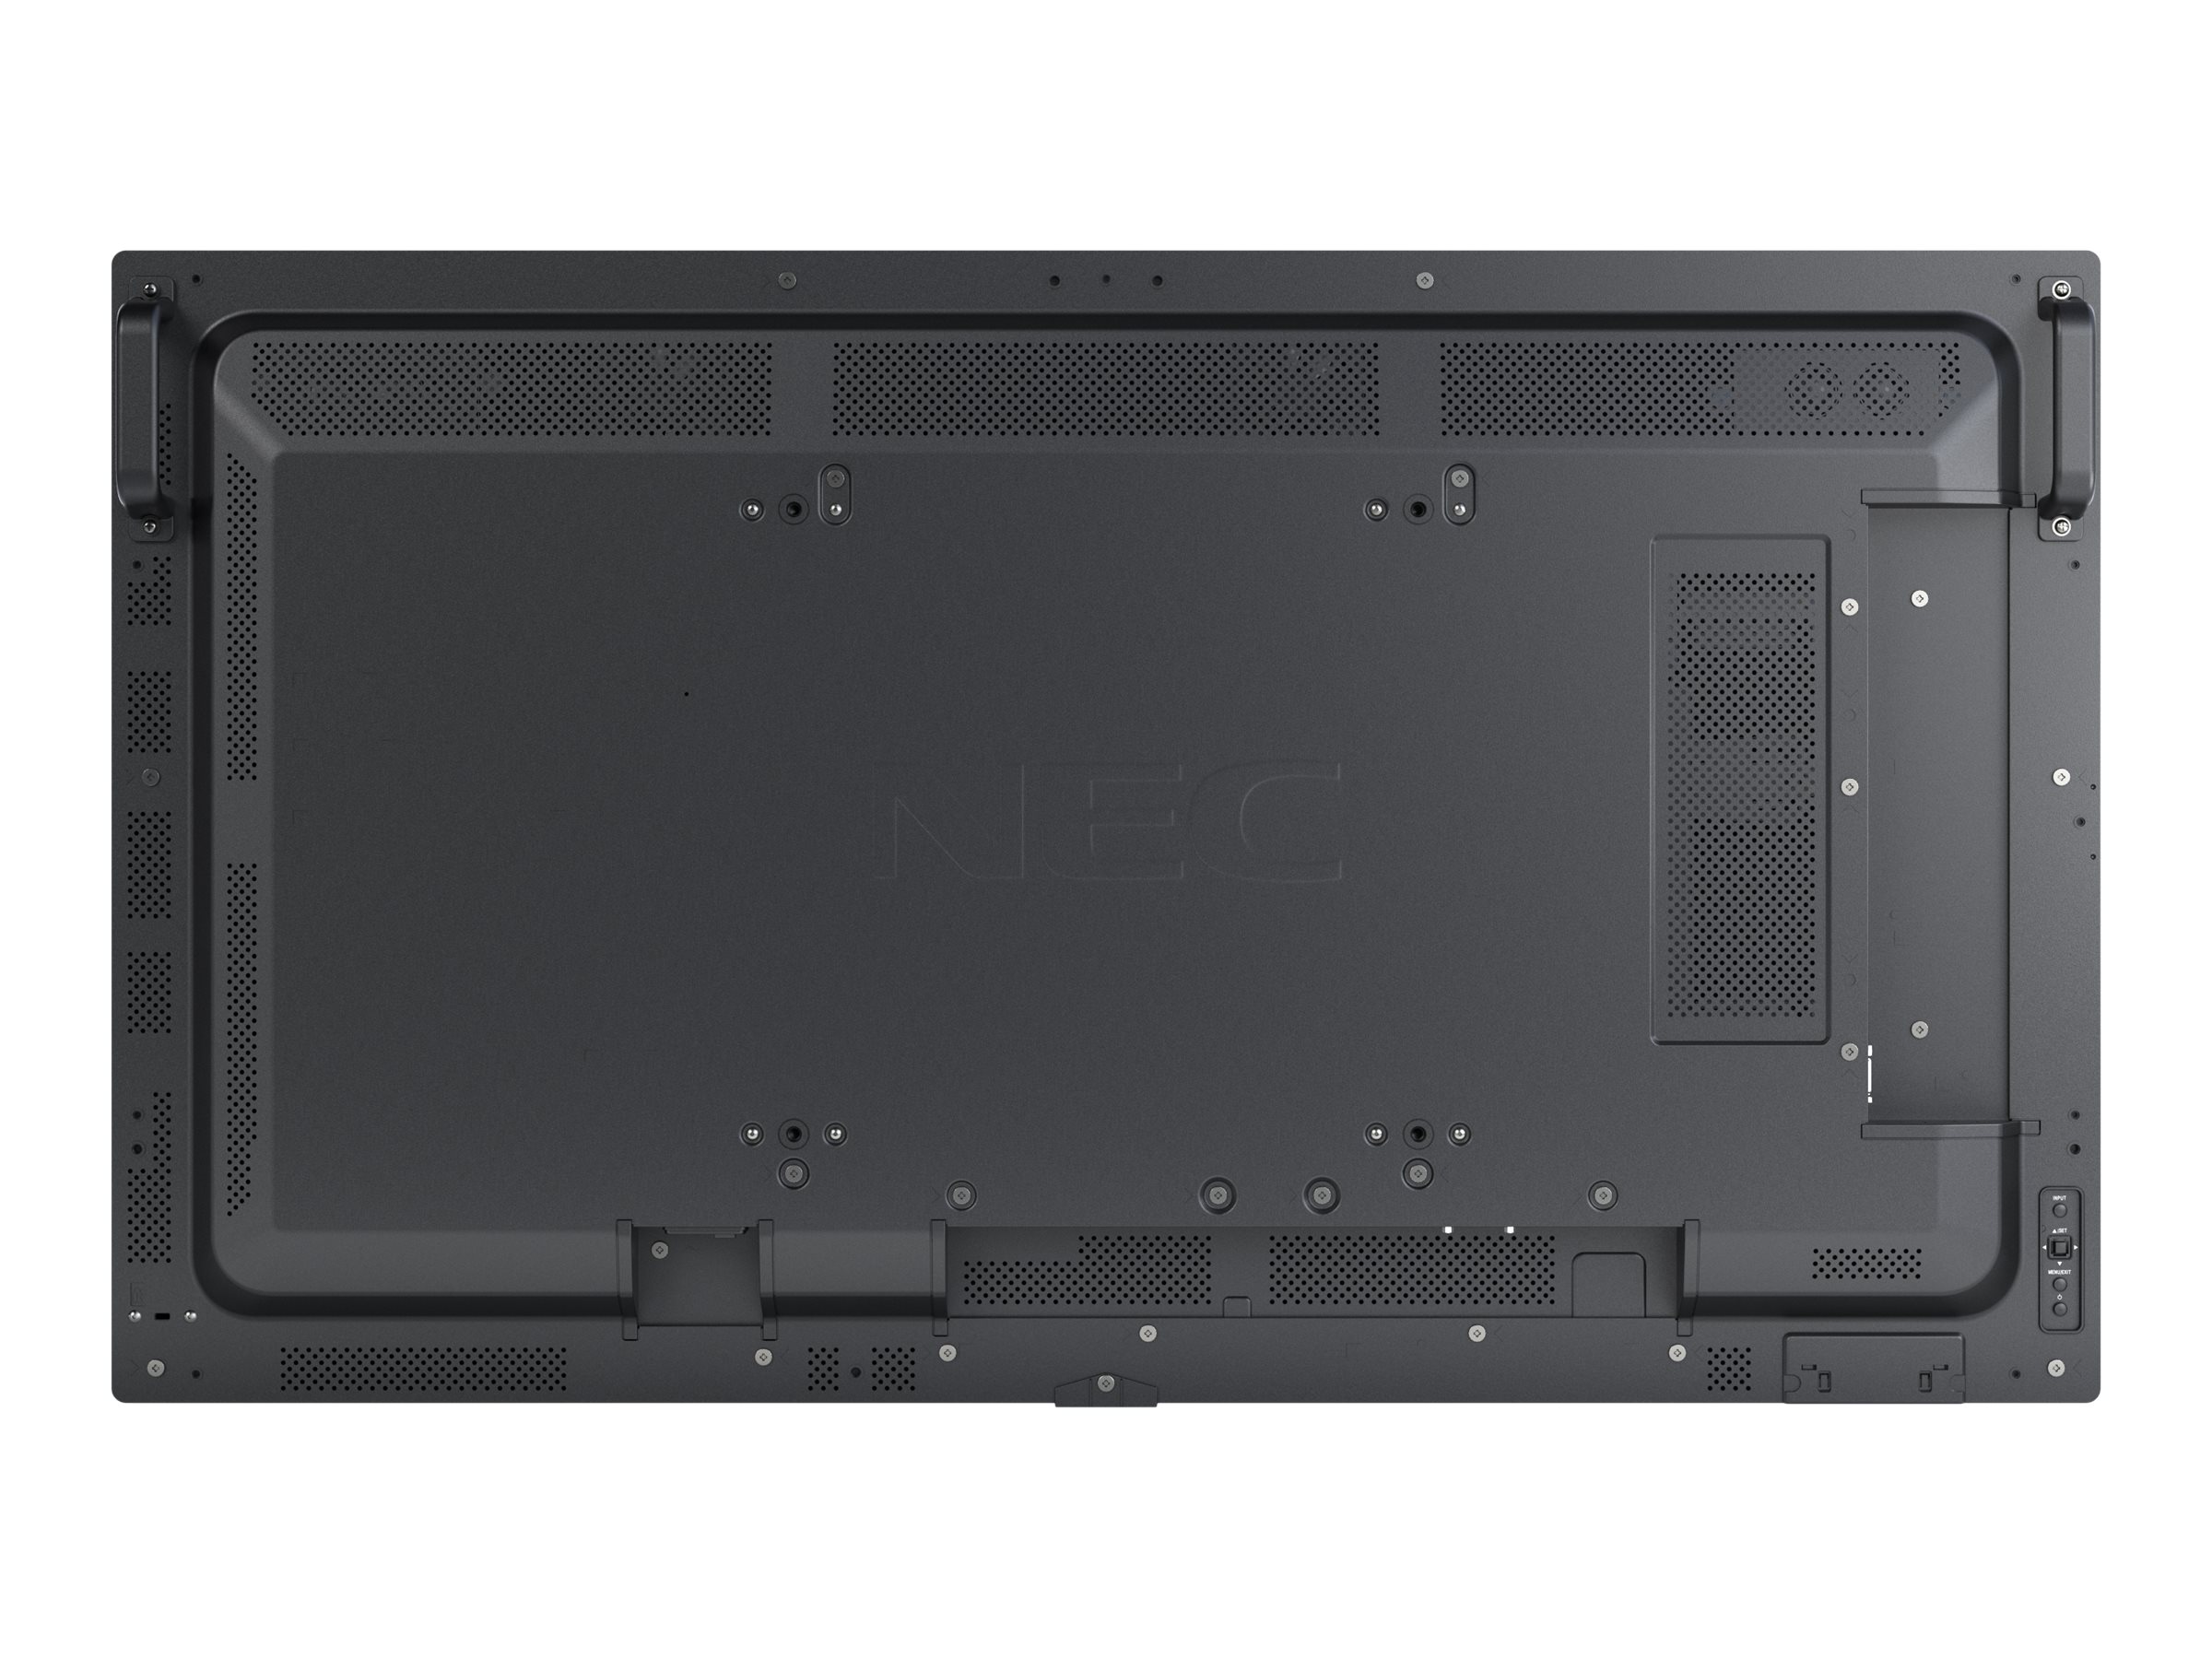 NEC MultiSync MA431 - Classe de diagonale 43" MA Series écran LCD rétro-éclairé par LED - signalisation numérique - 4K UHD (2160p) 3840 x 2160 - HDR - éclairage périphérique - noir - 60005046 - Écrans de signalisation numérique